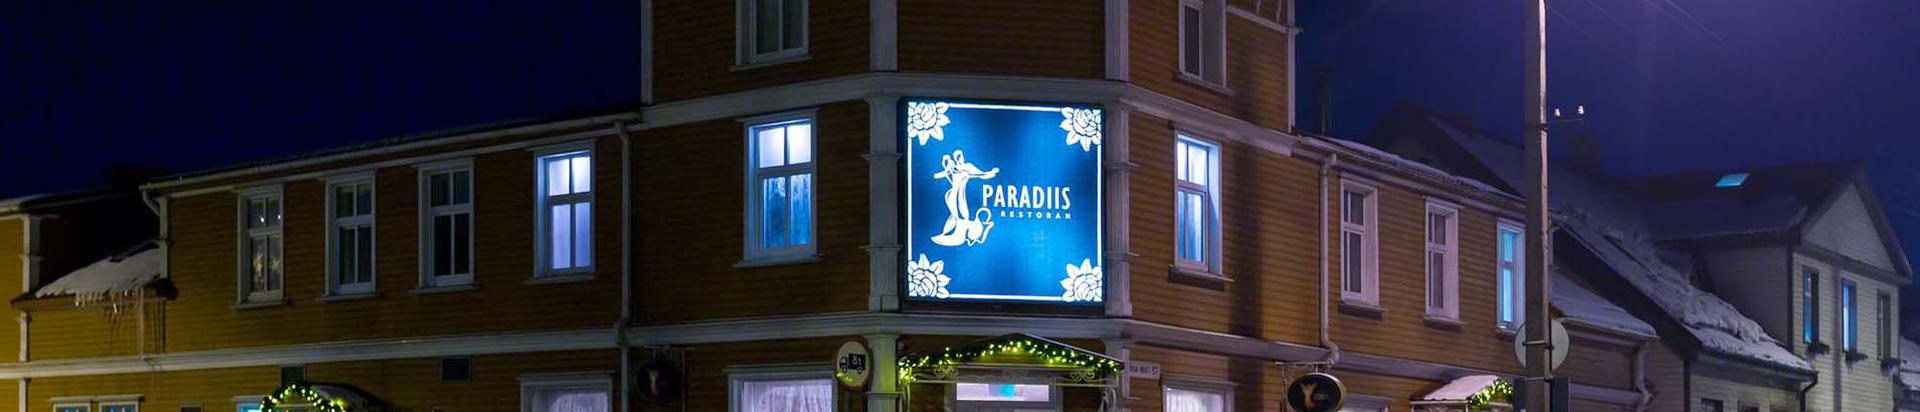 Restoran Paradiis on paik romantilisteks kohtumiseks ja aja veetmiseks! Restoran Paradiis on õdus koht Pärnus Riia mnt ääres, kus kõigil on lihtne jääda iseendaks. Paradiisi mõnusalt sooja atmosfääri loovad kaminates praksuvad halud ja sõbralik ning meeldiv teenindus.